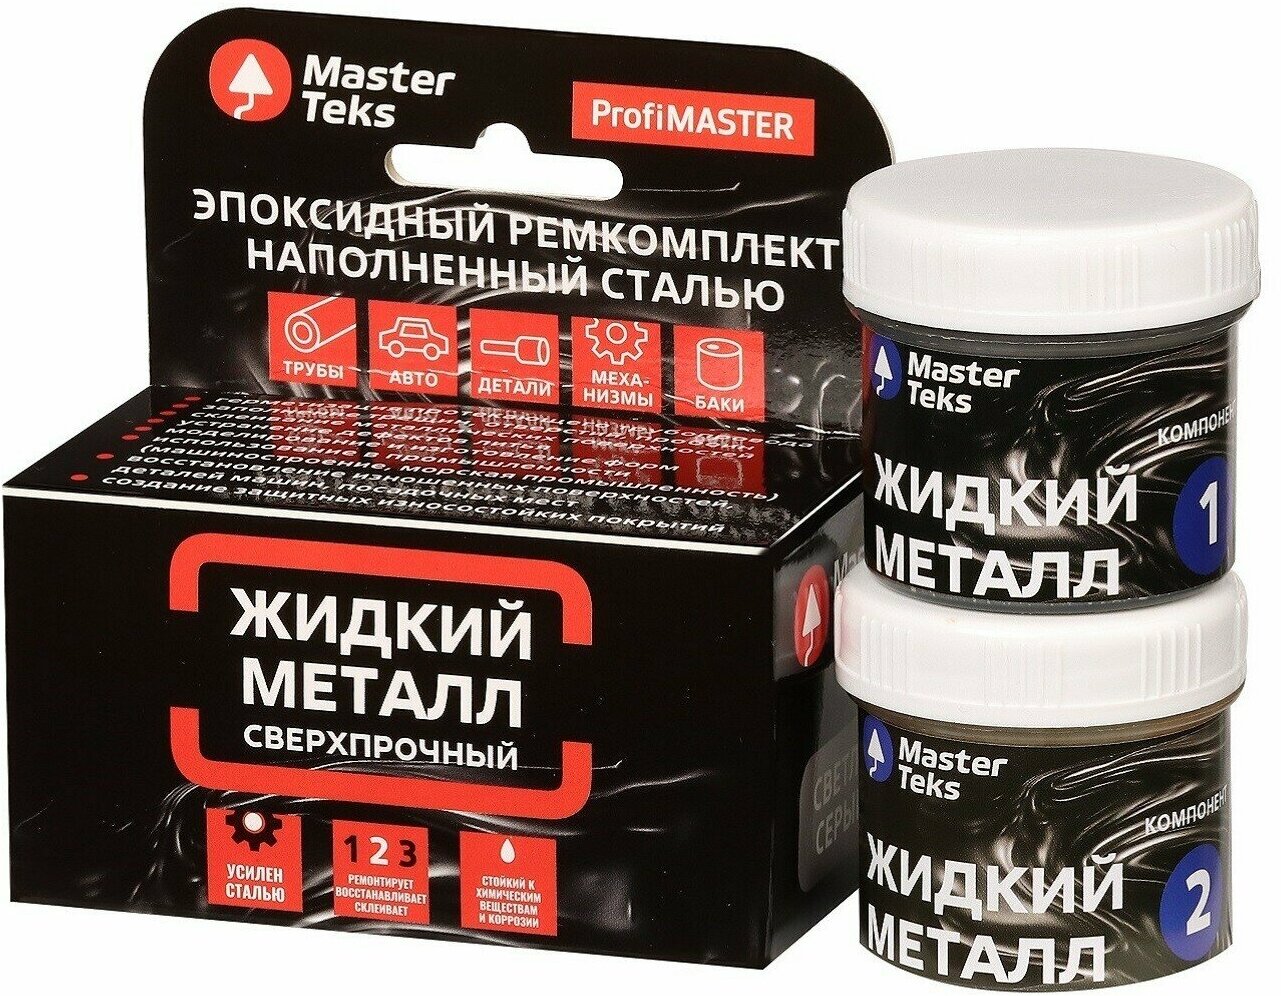 MasterTeks PM ремкомплект эпоксидный жидкий металл сверхпрочный 160 гр